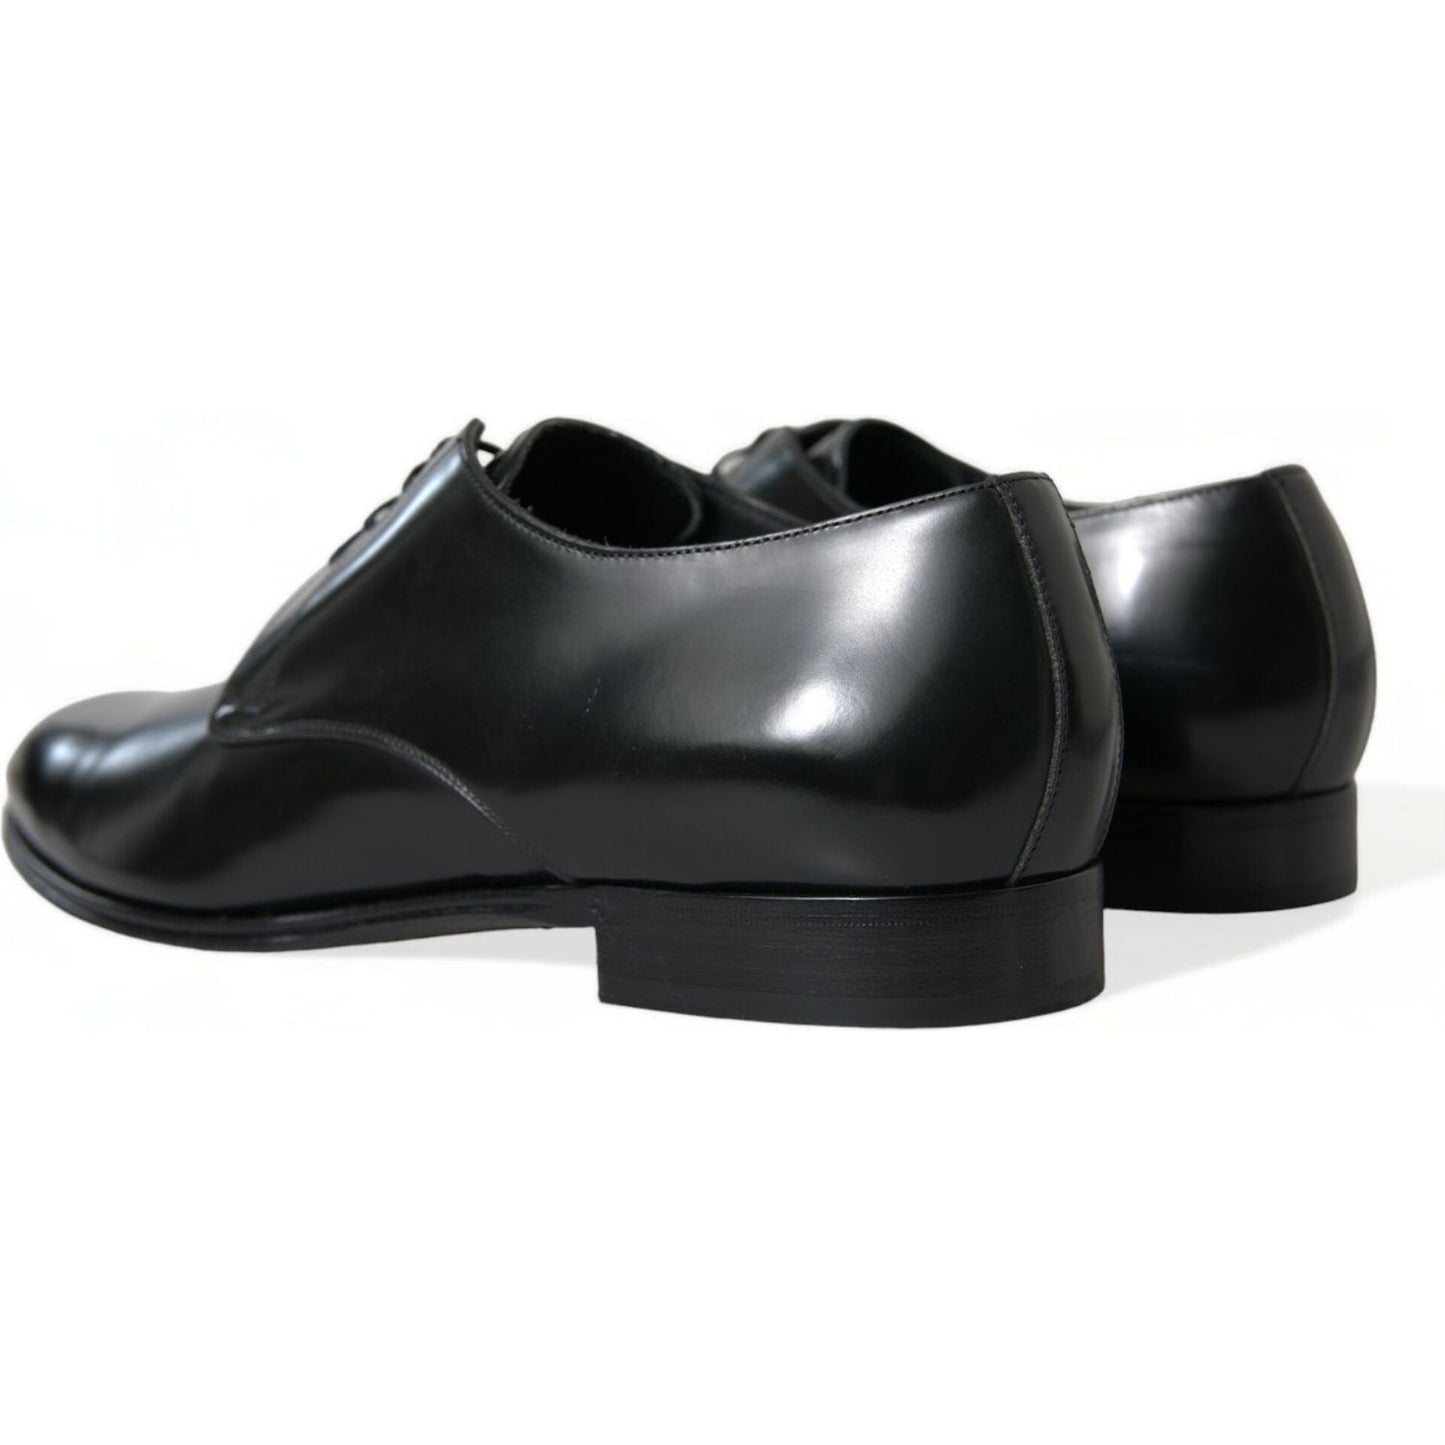 Dolce & Gabbana Elegant Black Calfskin Men's Derby Shoes black-leather-lace-up-men-dress-derby-shoes-3